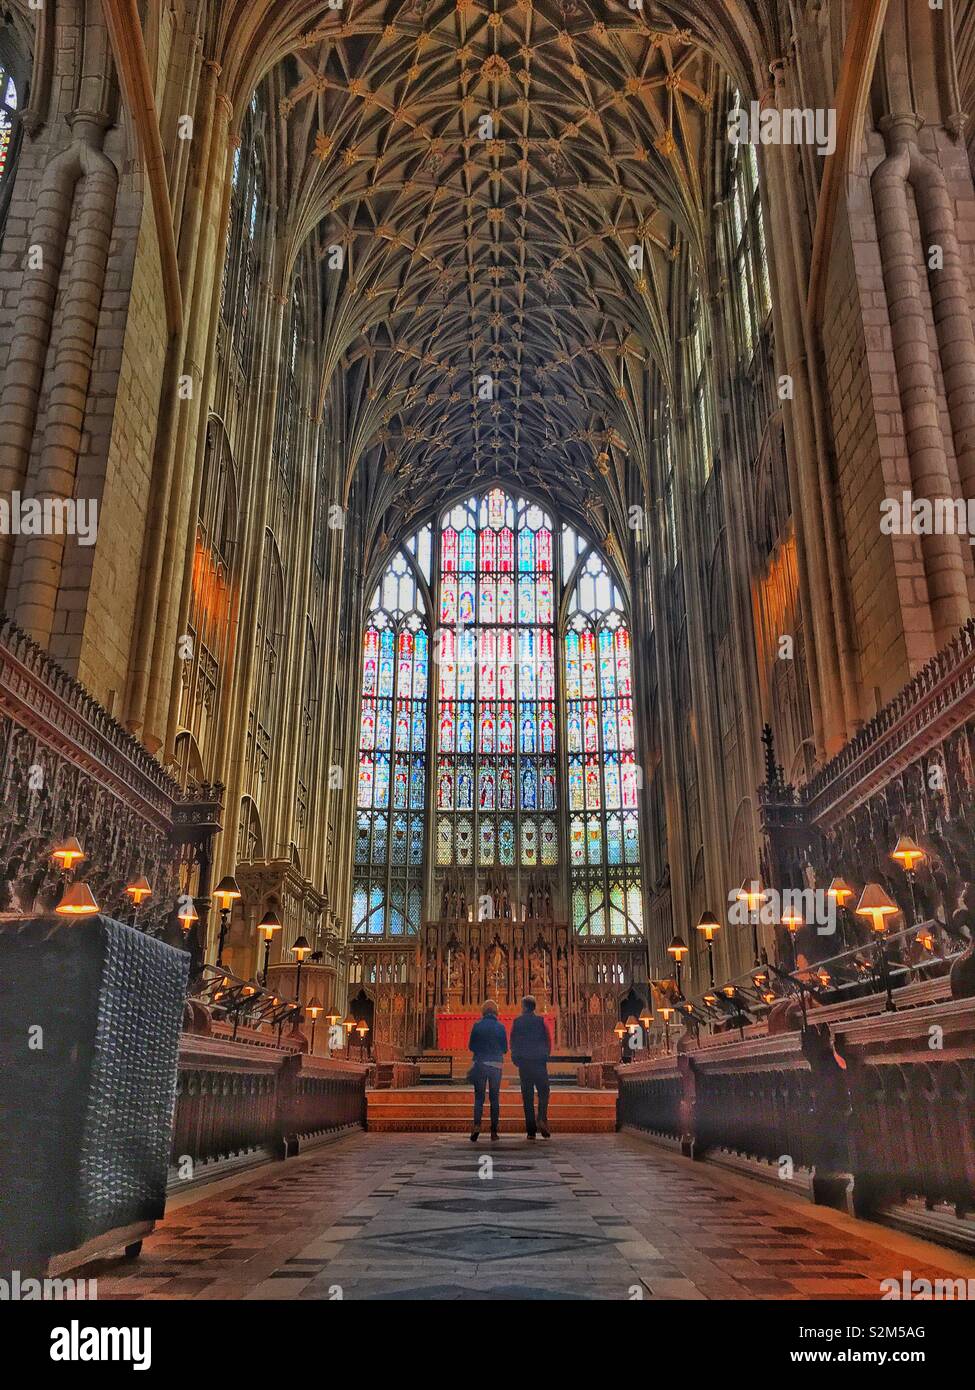 Enorme soffitto a volta della cattedrale di Gloucester che mostra uno dei più grandi finestre di vetro macchiate in Europa Foto Stock